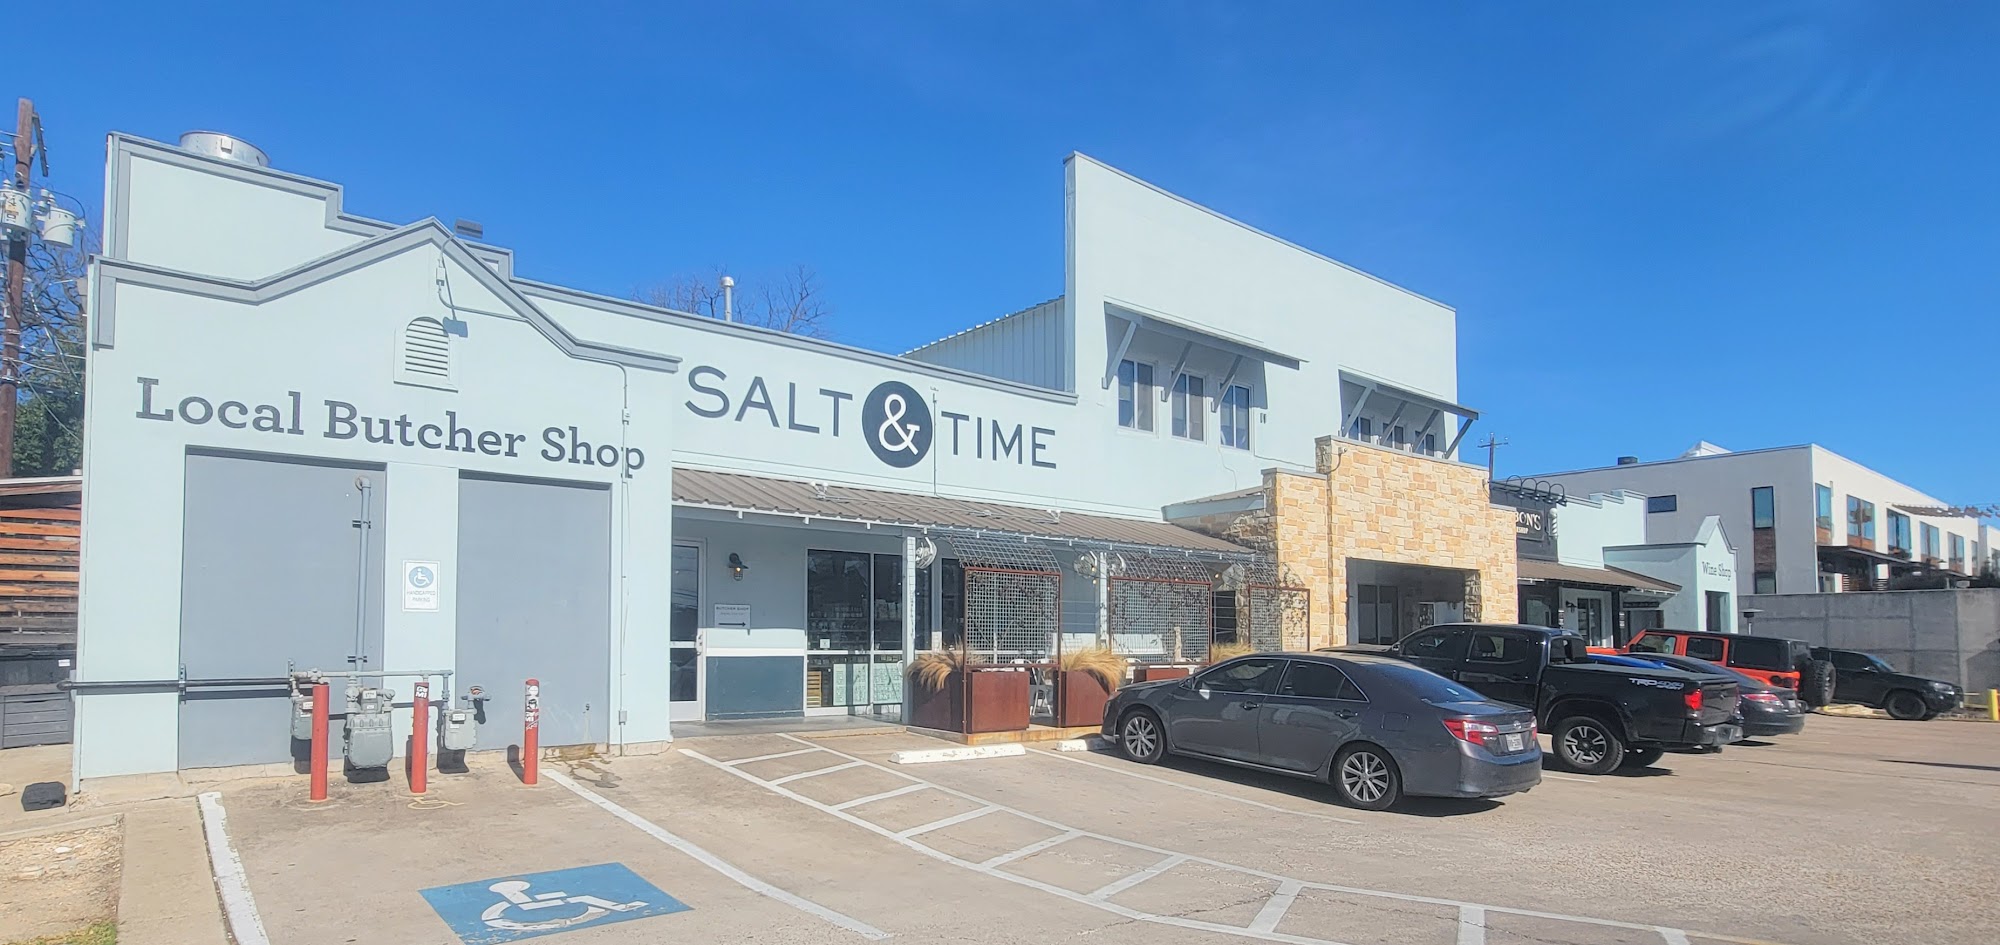 Salt & Time Butcher Shop and Restaurant